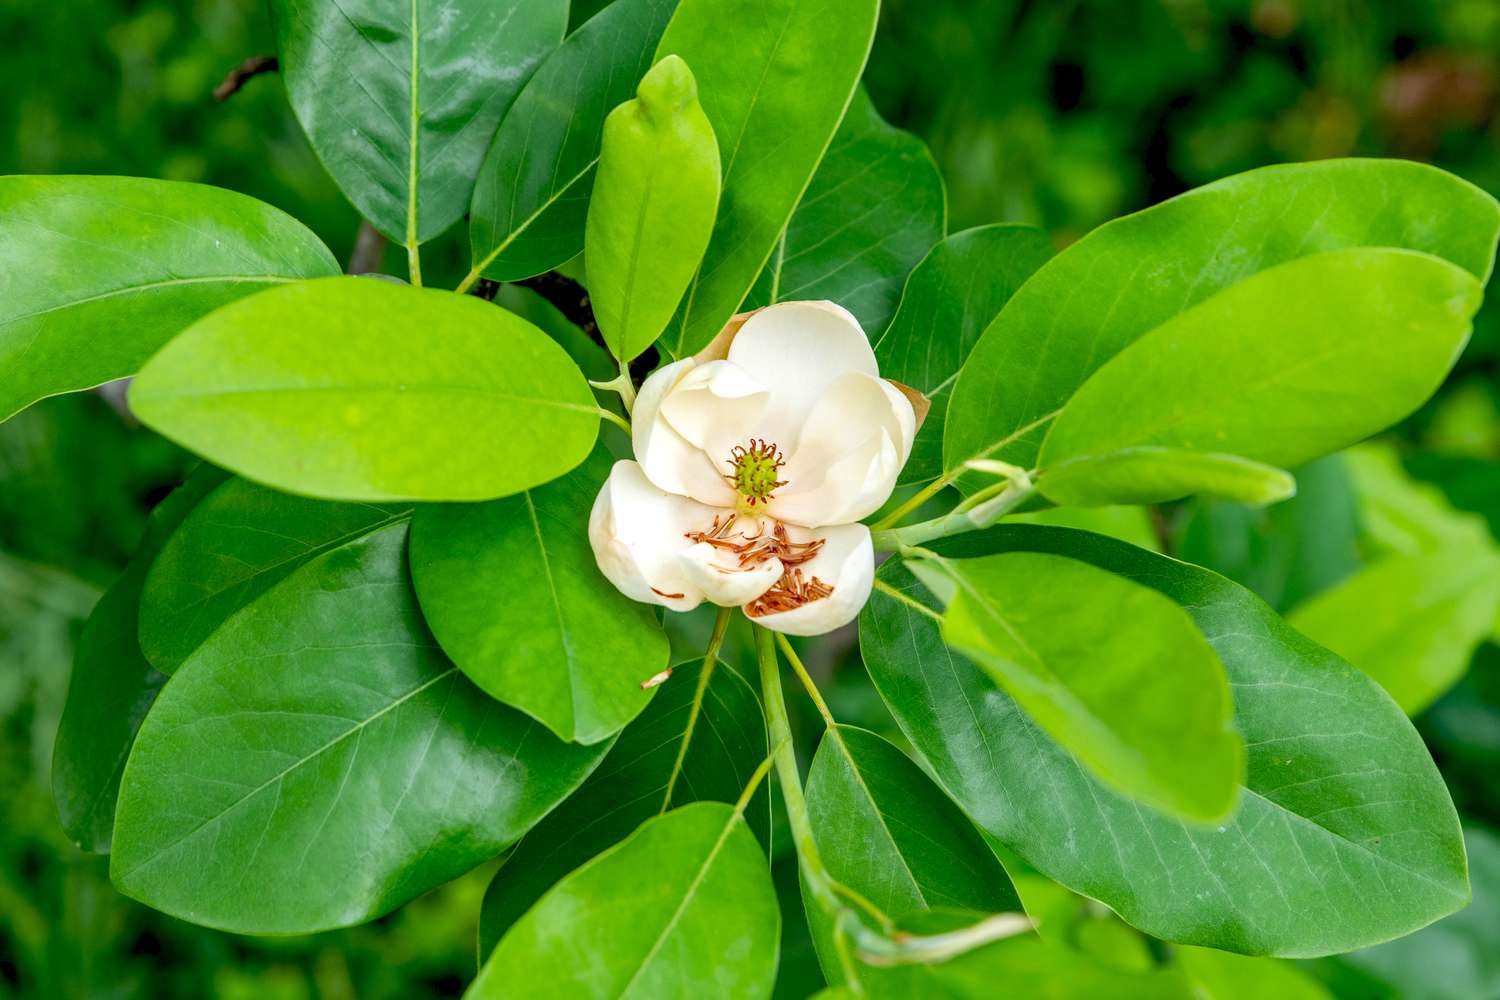 Sweetbay-Magnolienbaumzweig mit lanzettförmigen Blättern, die eine weiße Blüte in der Mitte umgeben